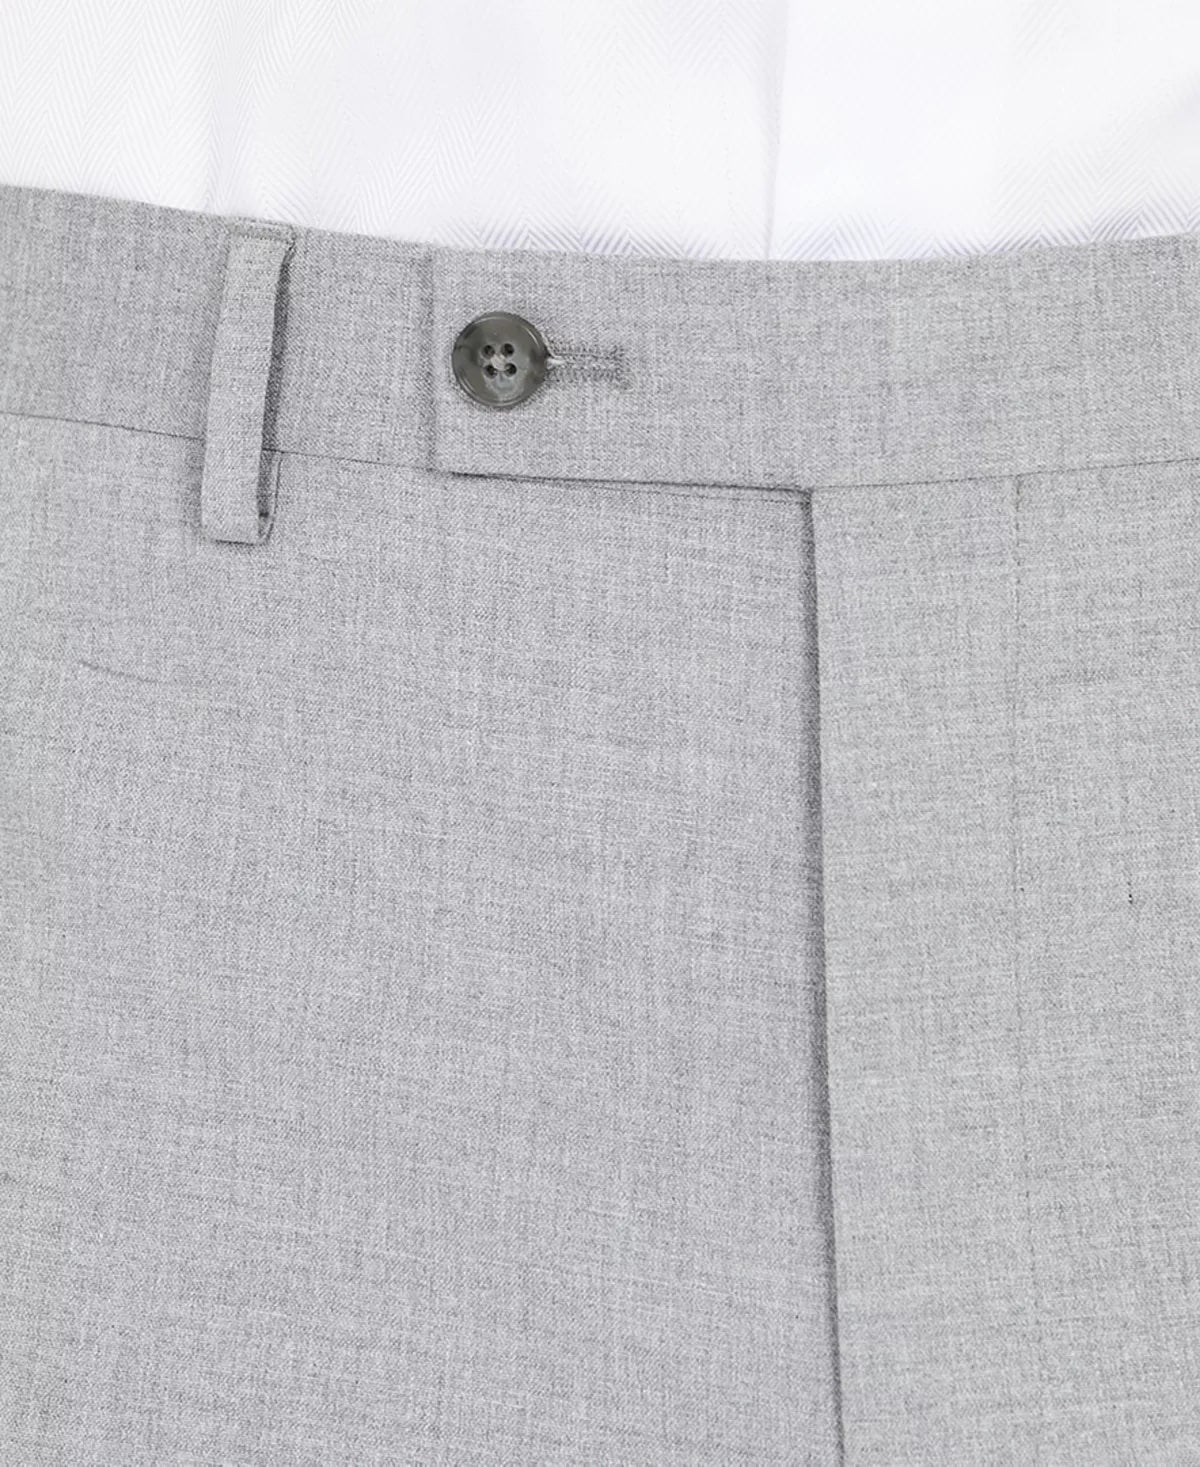 DKNY Men's Dress Pants Light Grey 38 x 29 Modern-Fit Light Gray Stretch